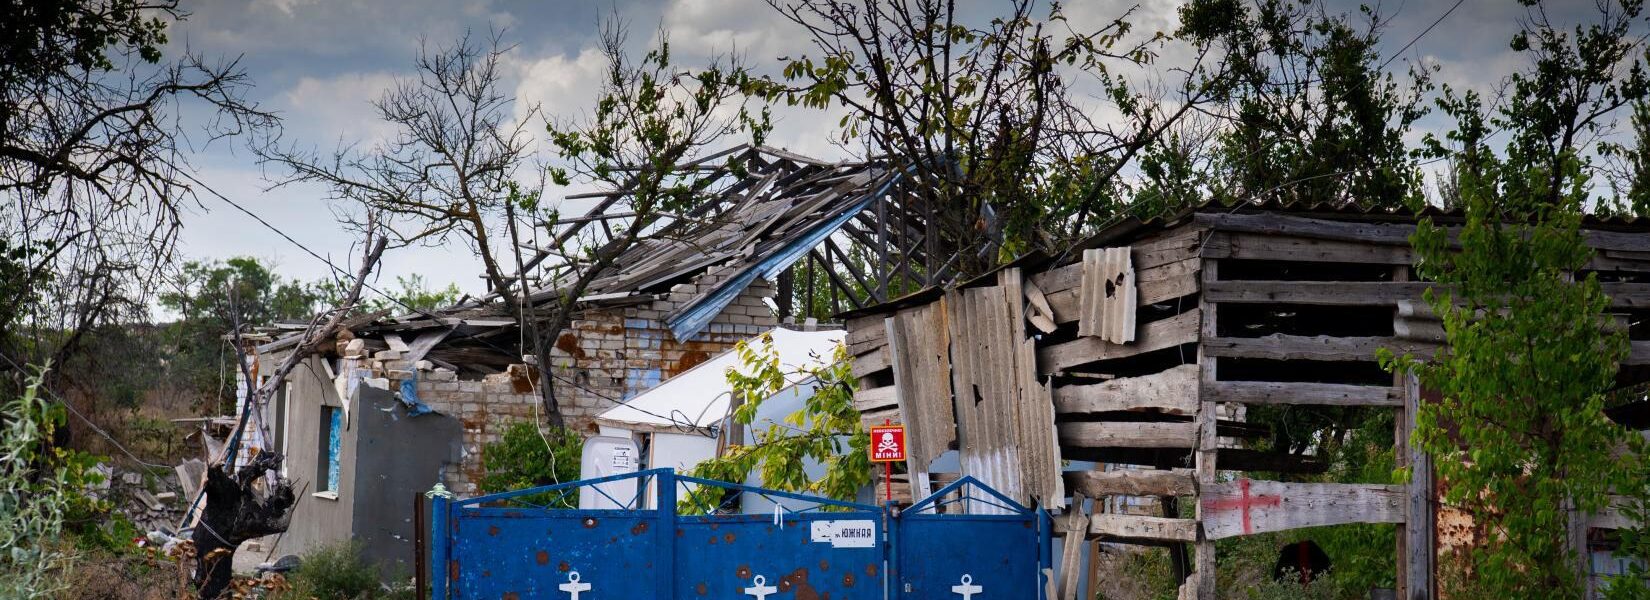 Reworded: Rebuilding of a Ukrainian village destroyed during conflict.